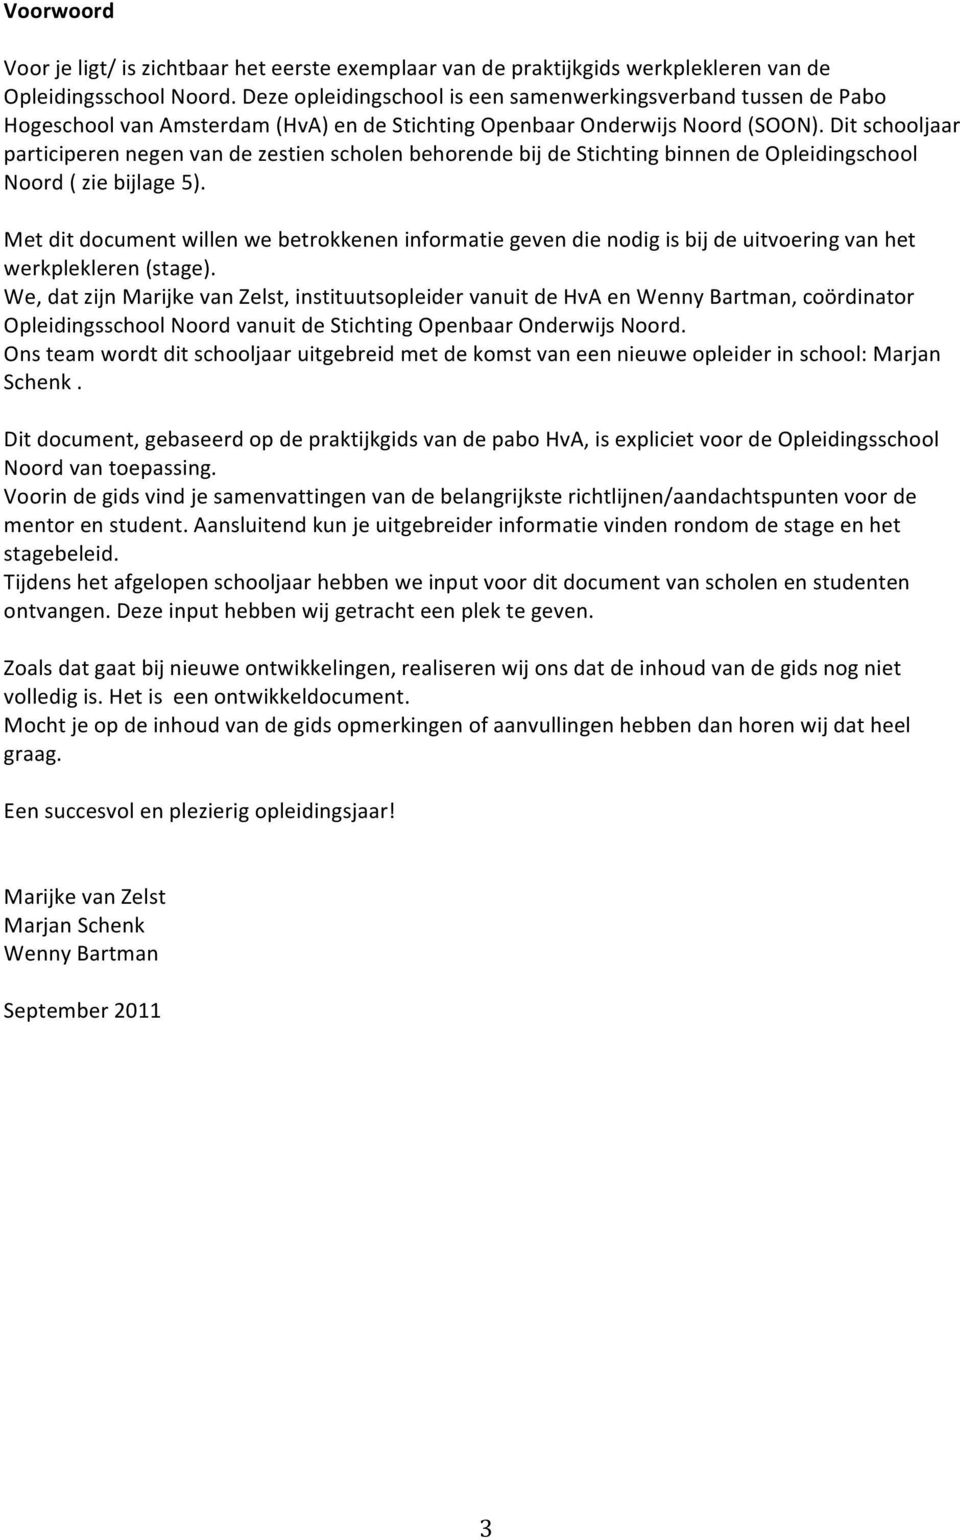 Ditschooljaar participerennegenvandezestienscholenbehorendebijdestichtingbinnendeopleidingschool Noord(ziebijlage5).